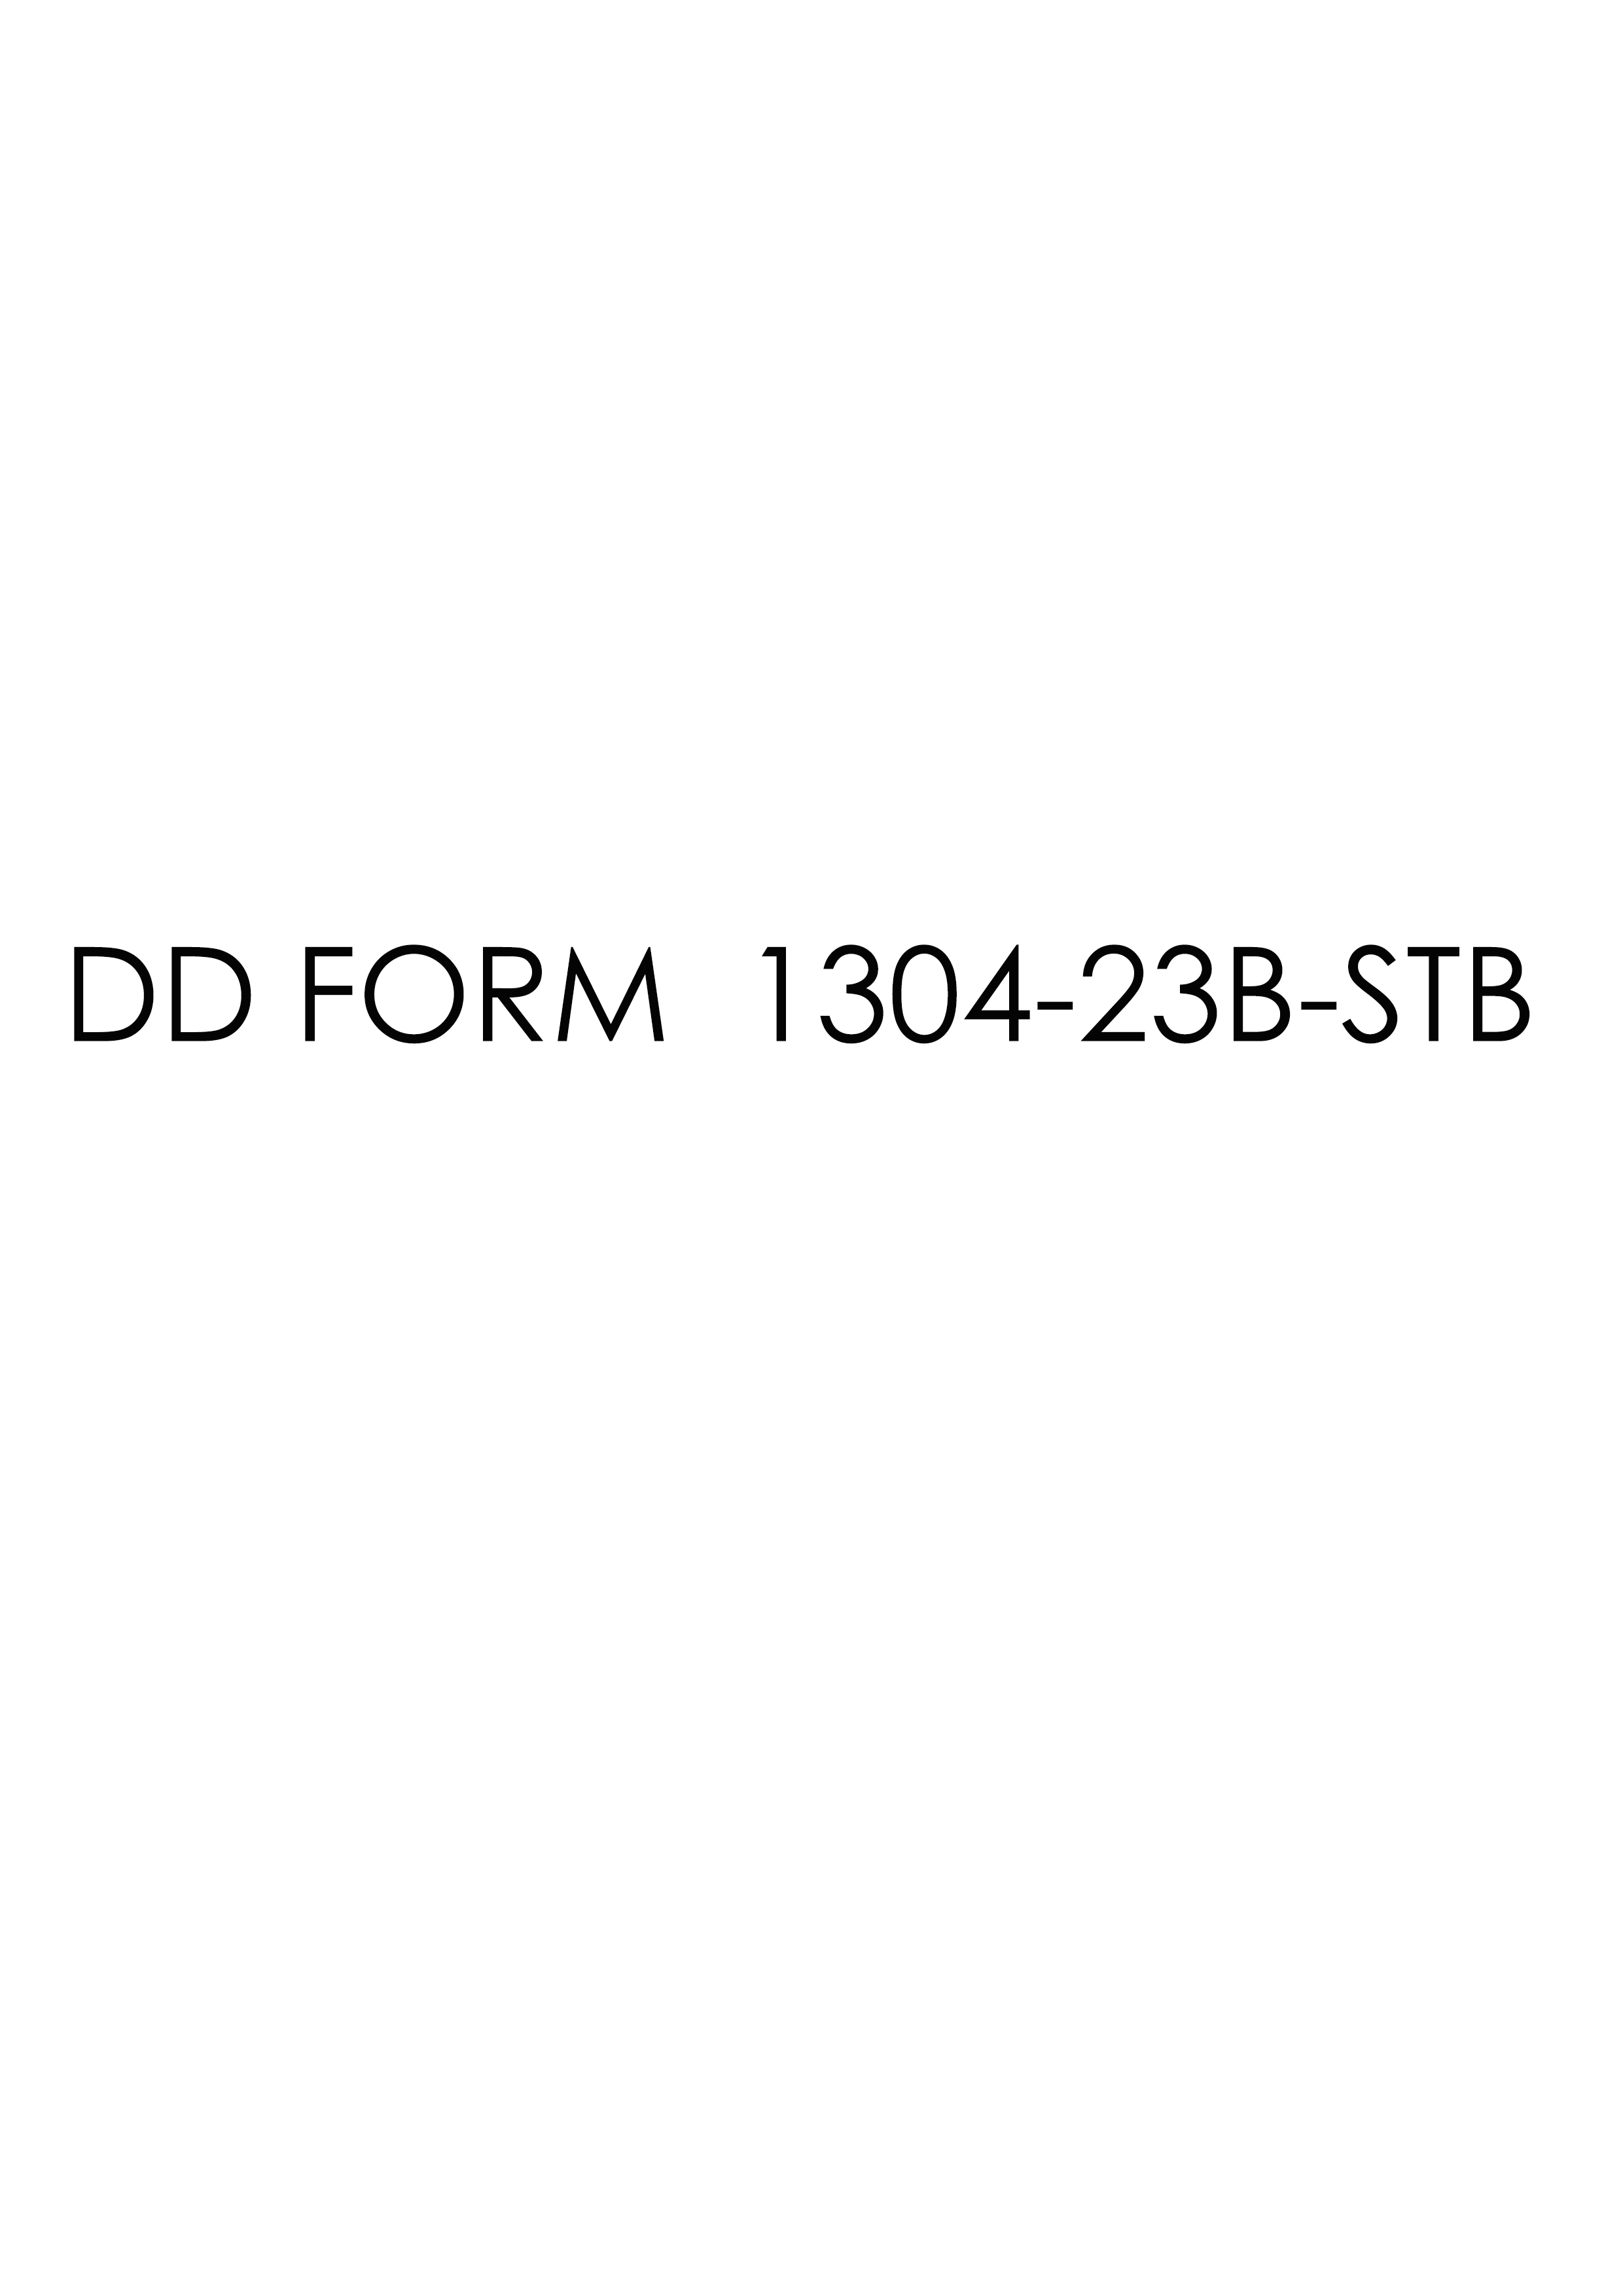 dd Form 1304-23B-STB fillable